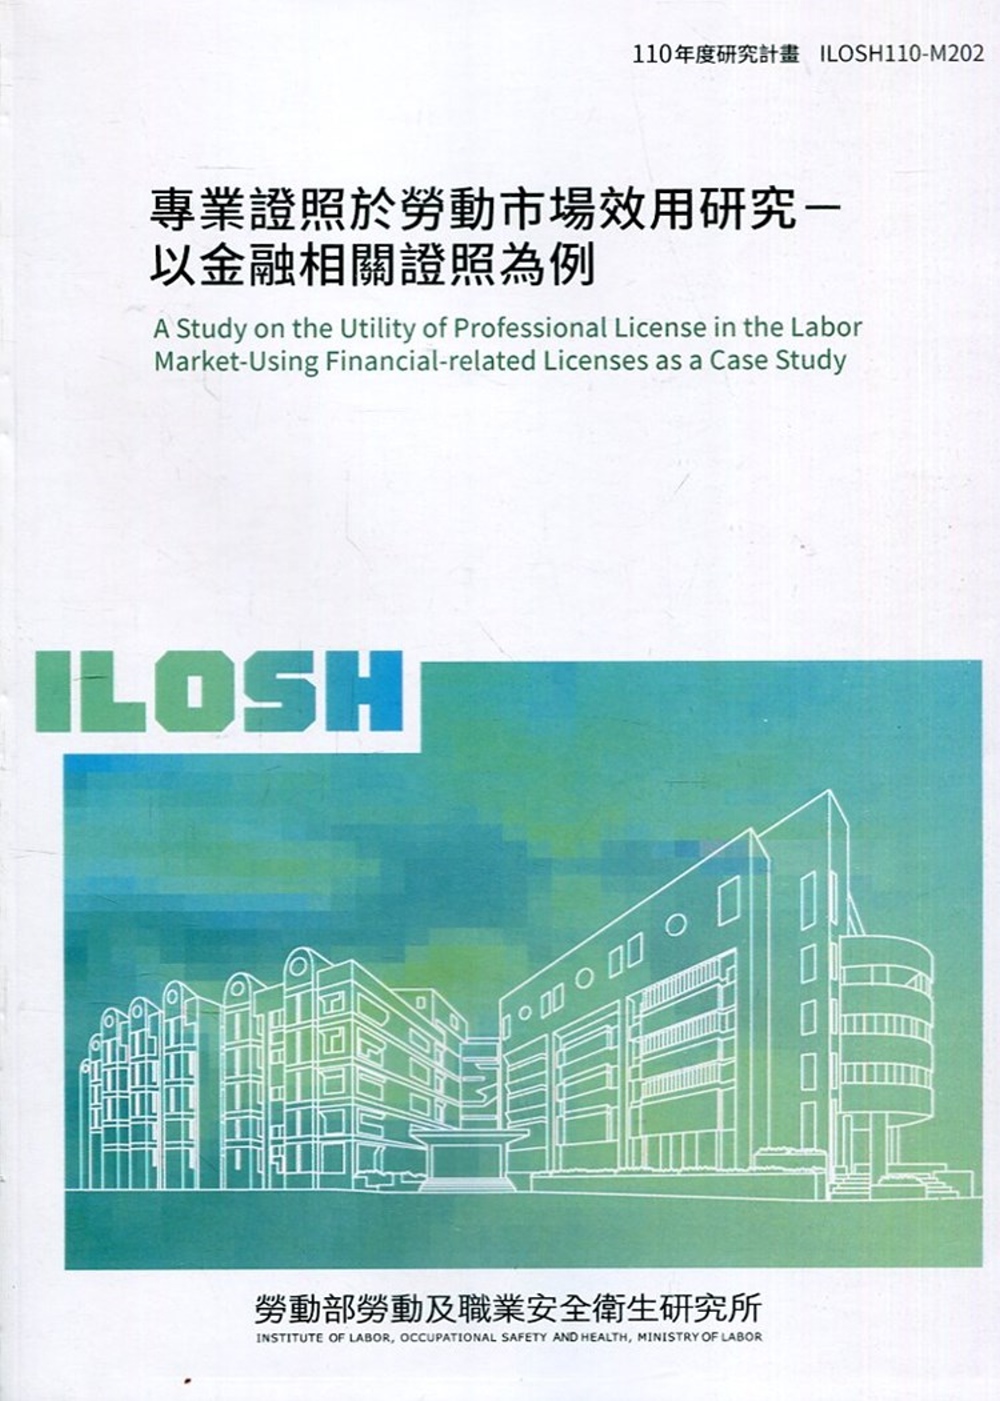 專業證照於勞動市場效用研究：以金融相關證照為例 ILOSH110-M202